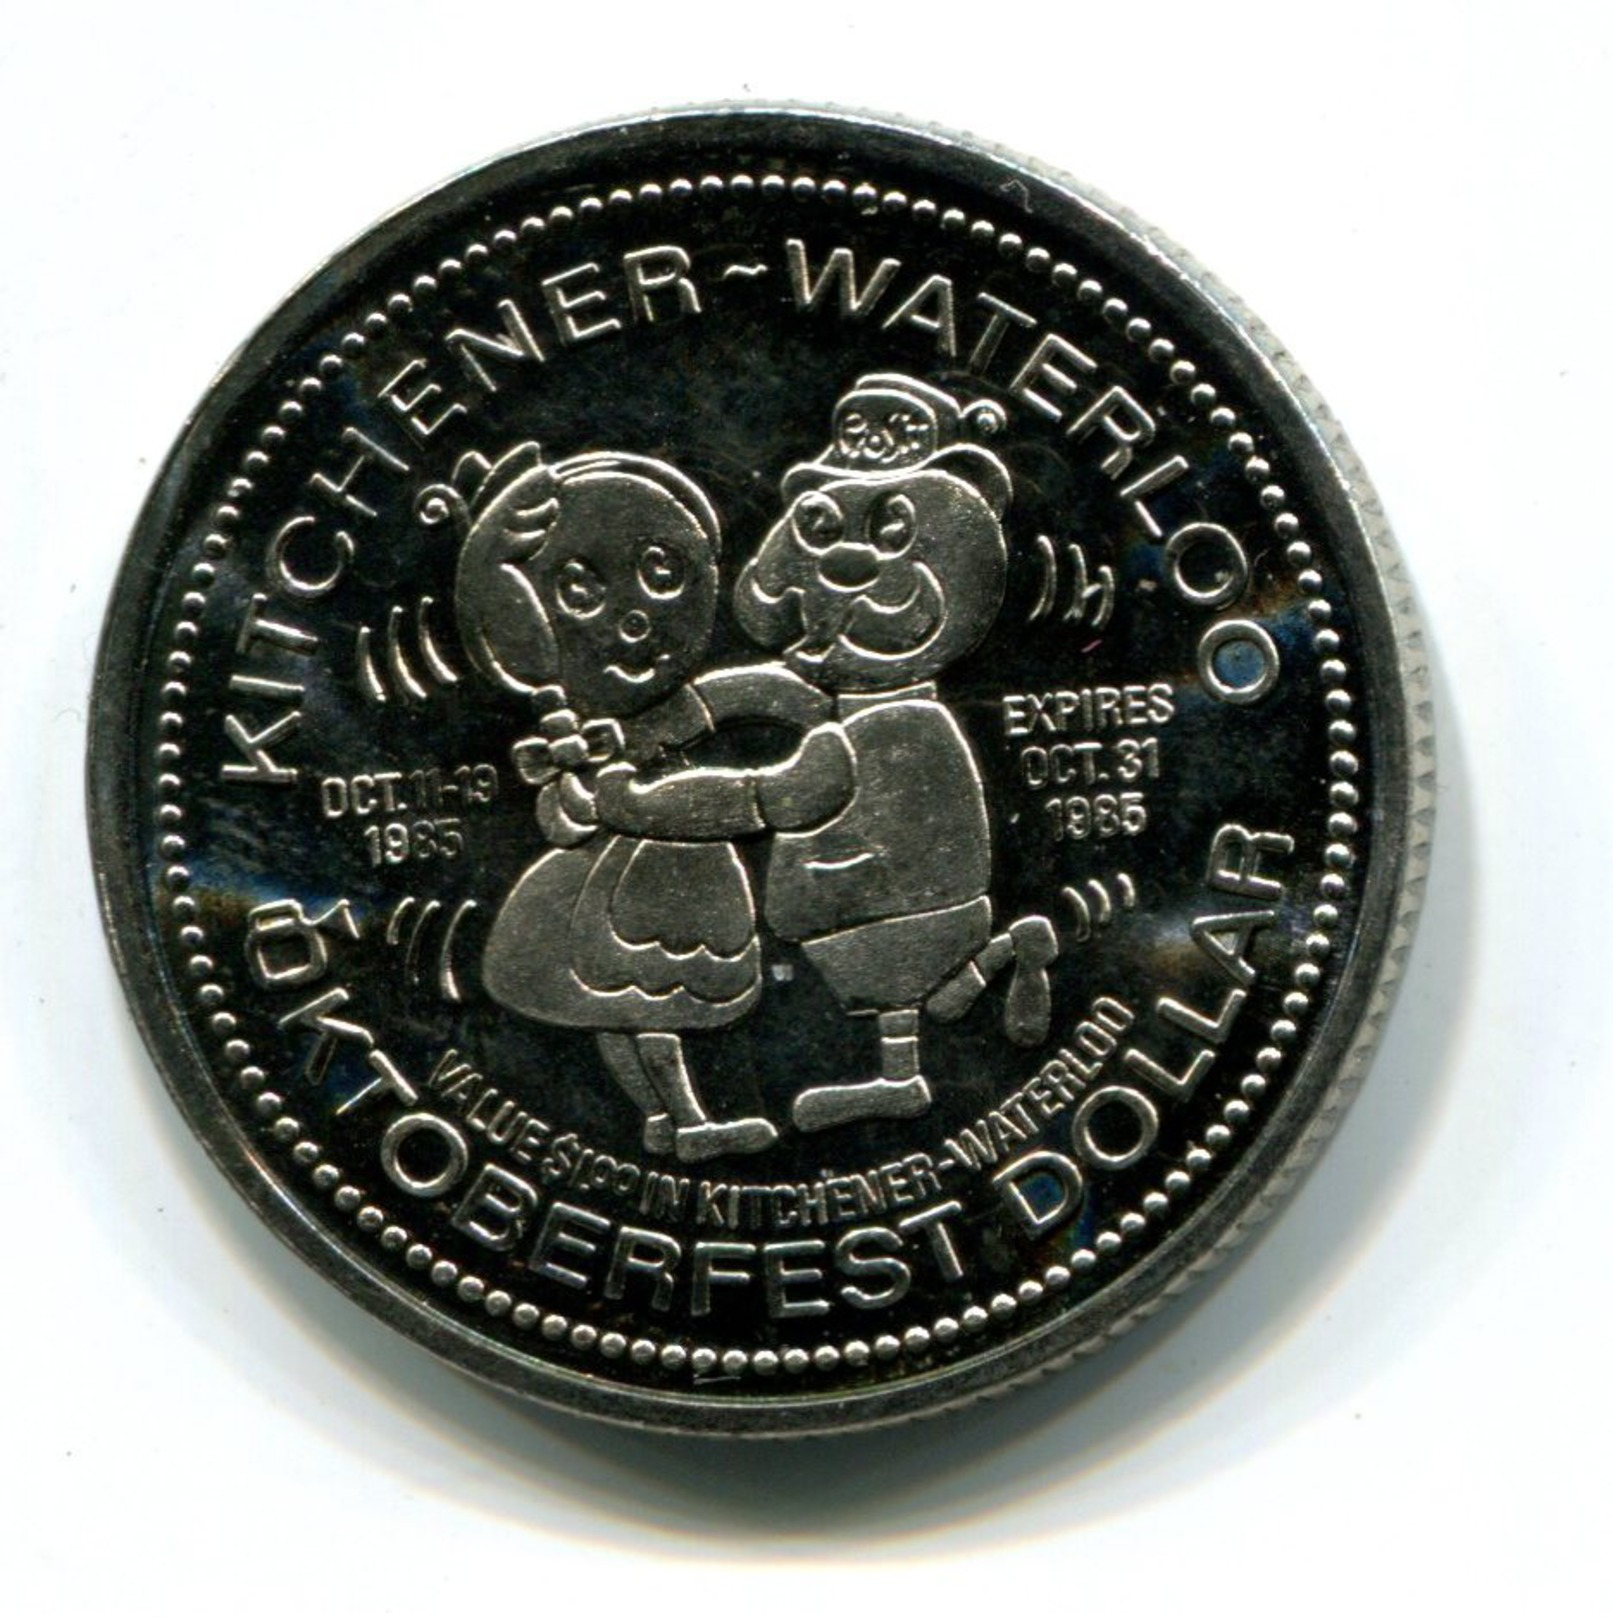 1985 KItchener-Waterloo Canada Oktoberfest $1 Token - Monetary /of Necessity